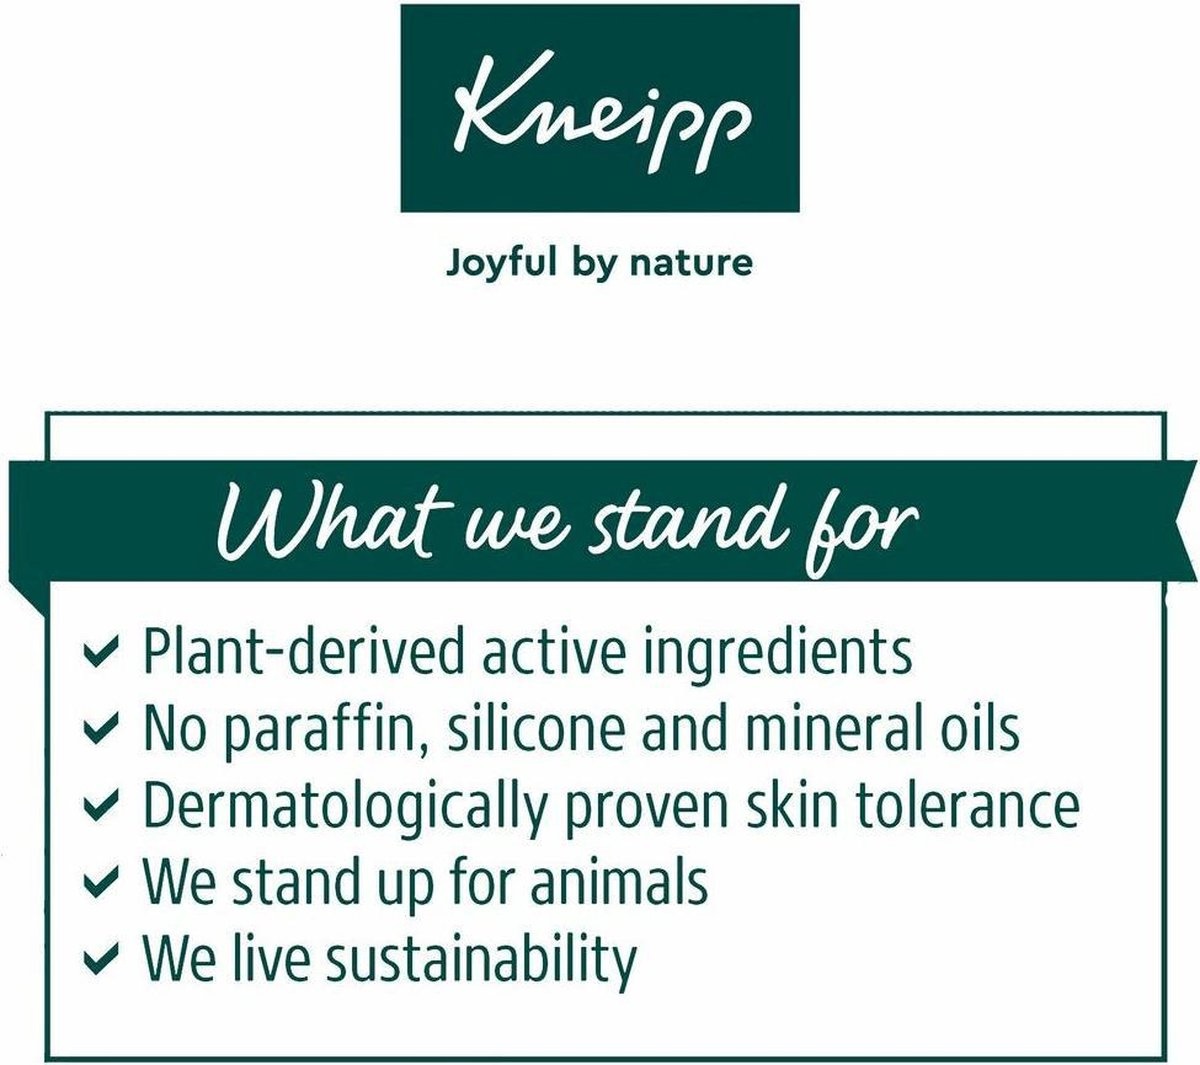 Kneipp Soft Skin - Skin oil 100ml - Packaging damaged